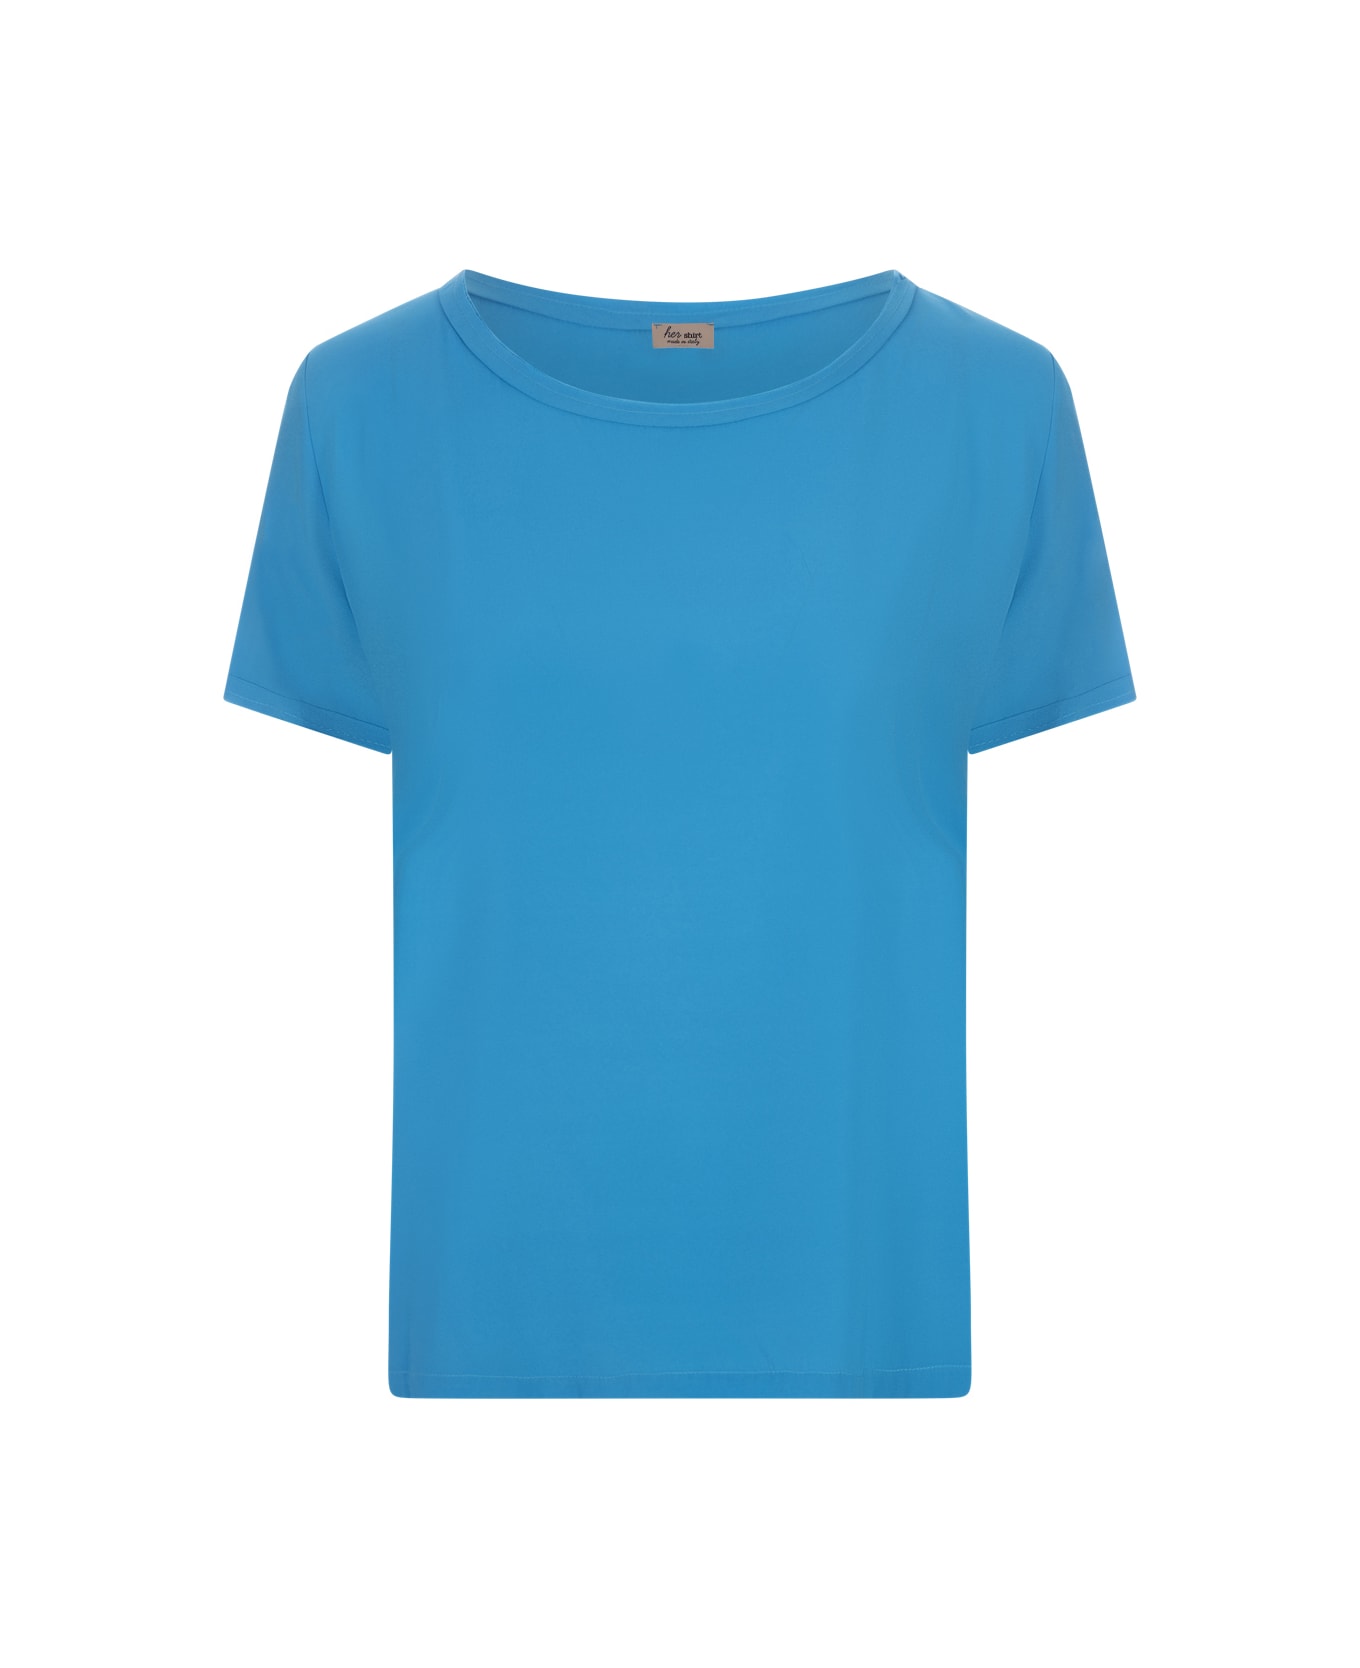 Her Shirt Blue Opaque Silk T-shirt - Blue